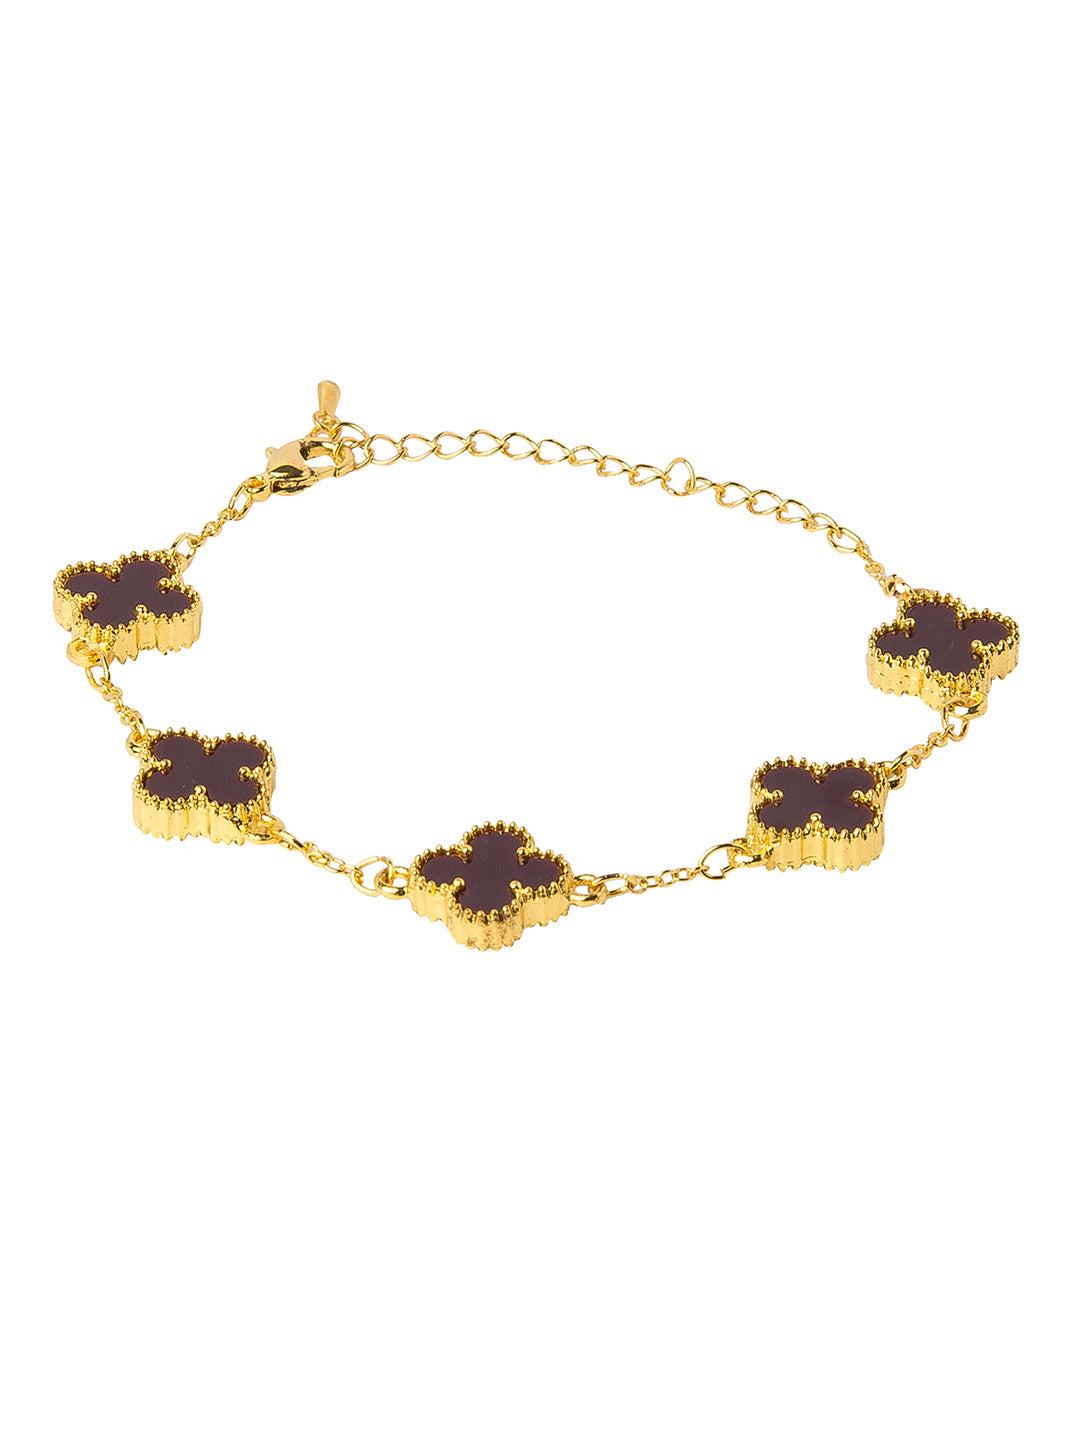 Gold Plated American Diamond Designer Flower Clover Bracelet For Girls, Teens & Women